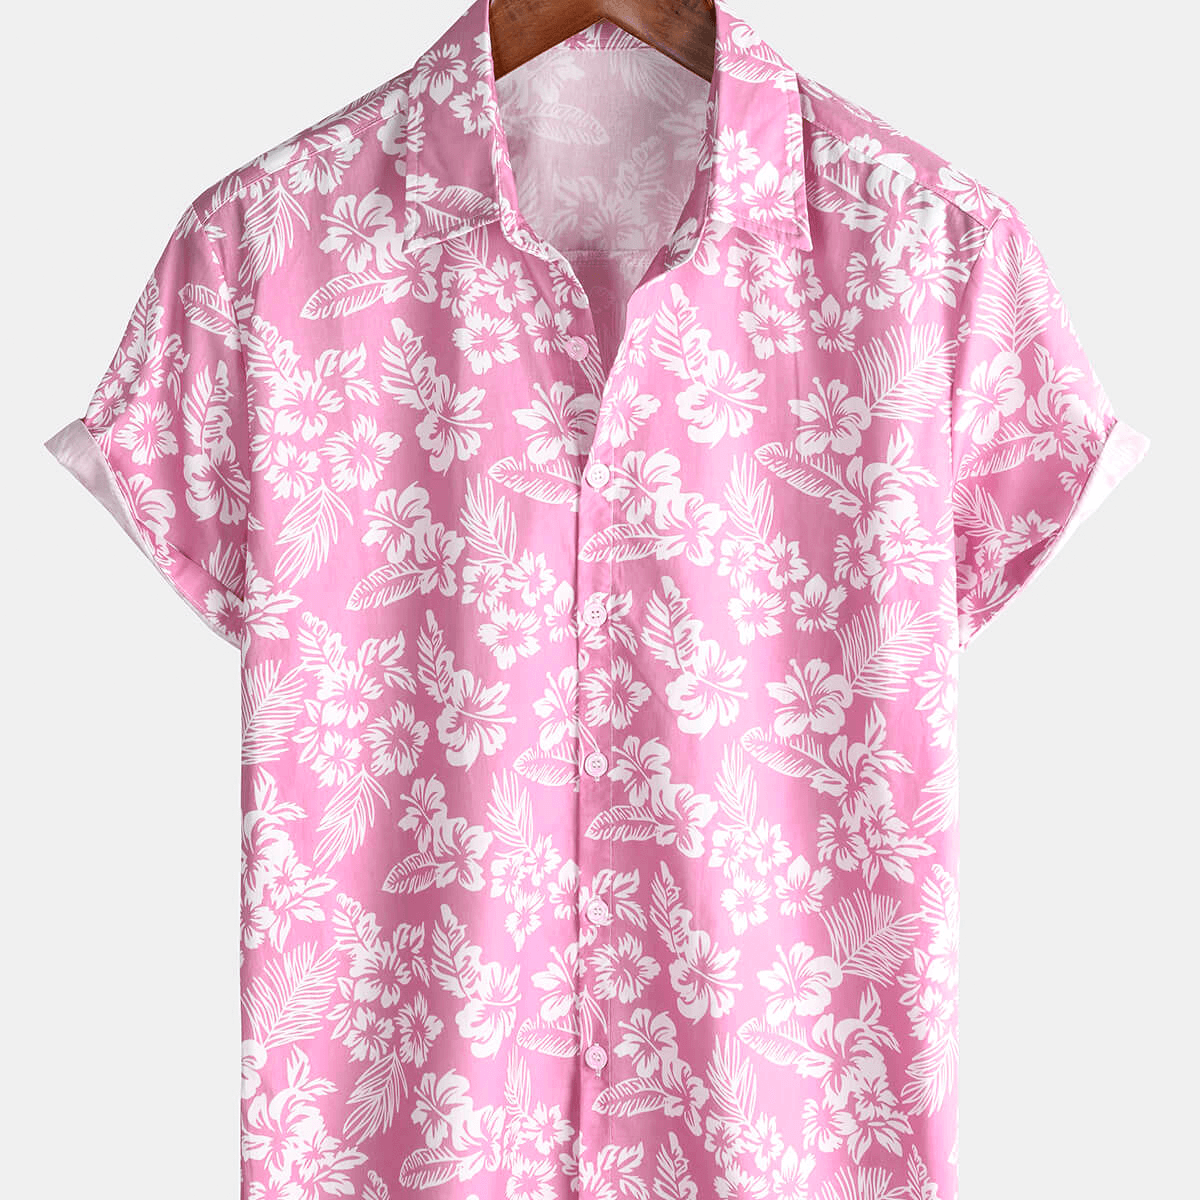 Men's Pink Cotton Hawaiian Floral Button Up Summer Short Sleeve Shirt